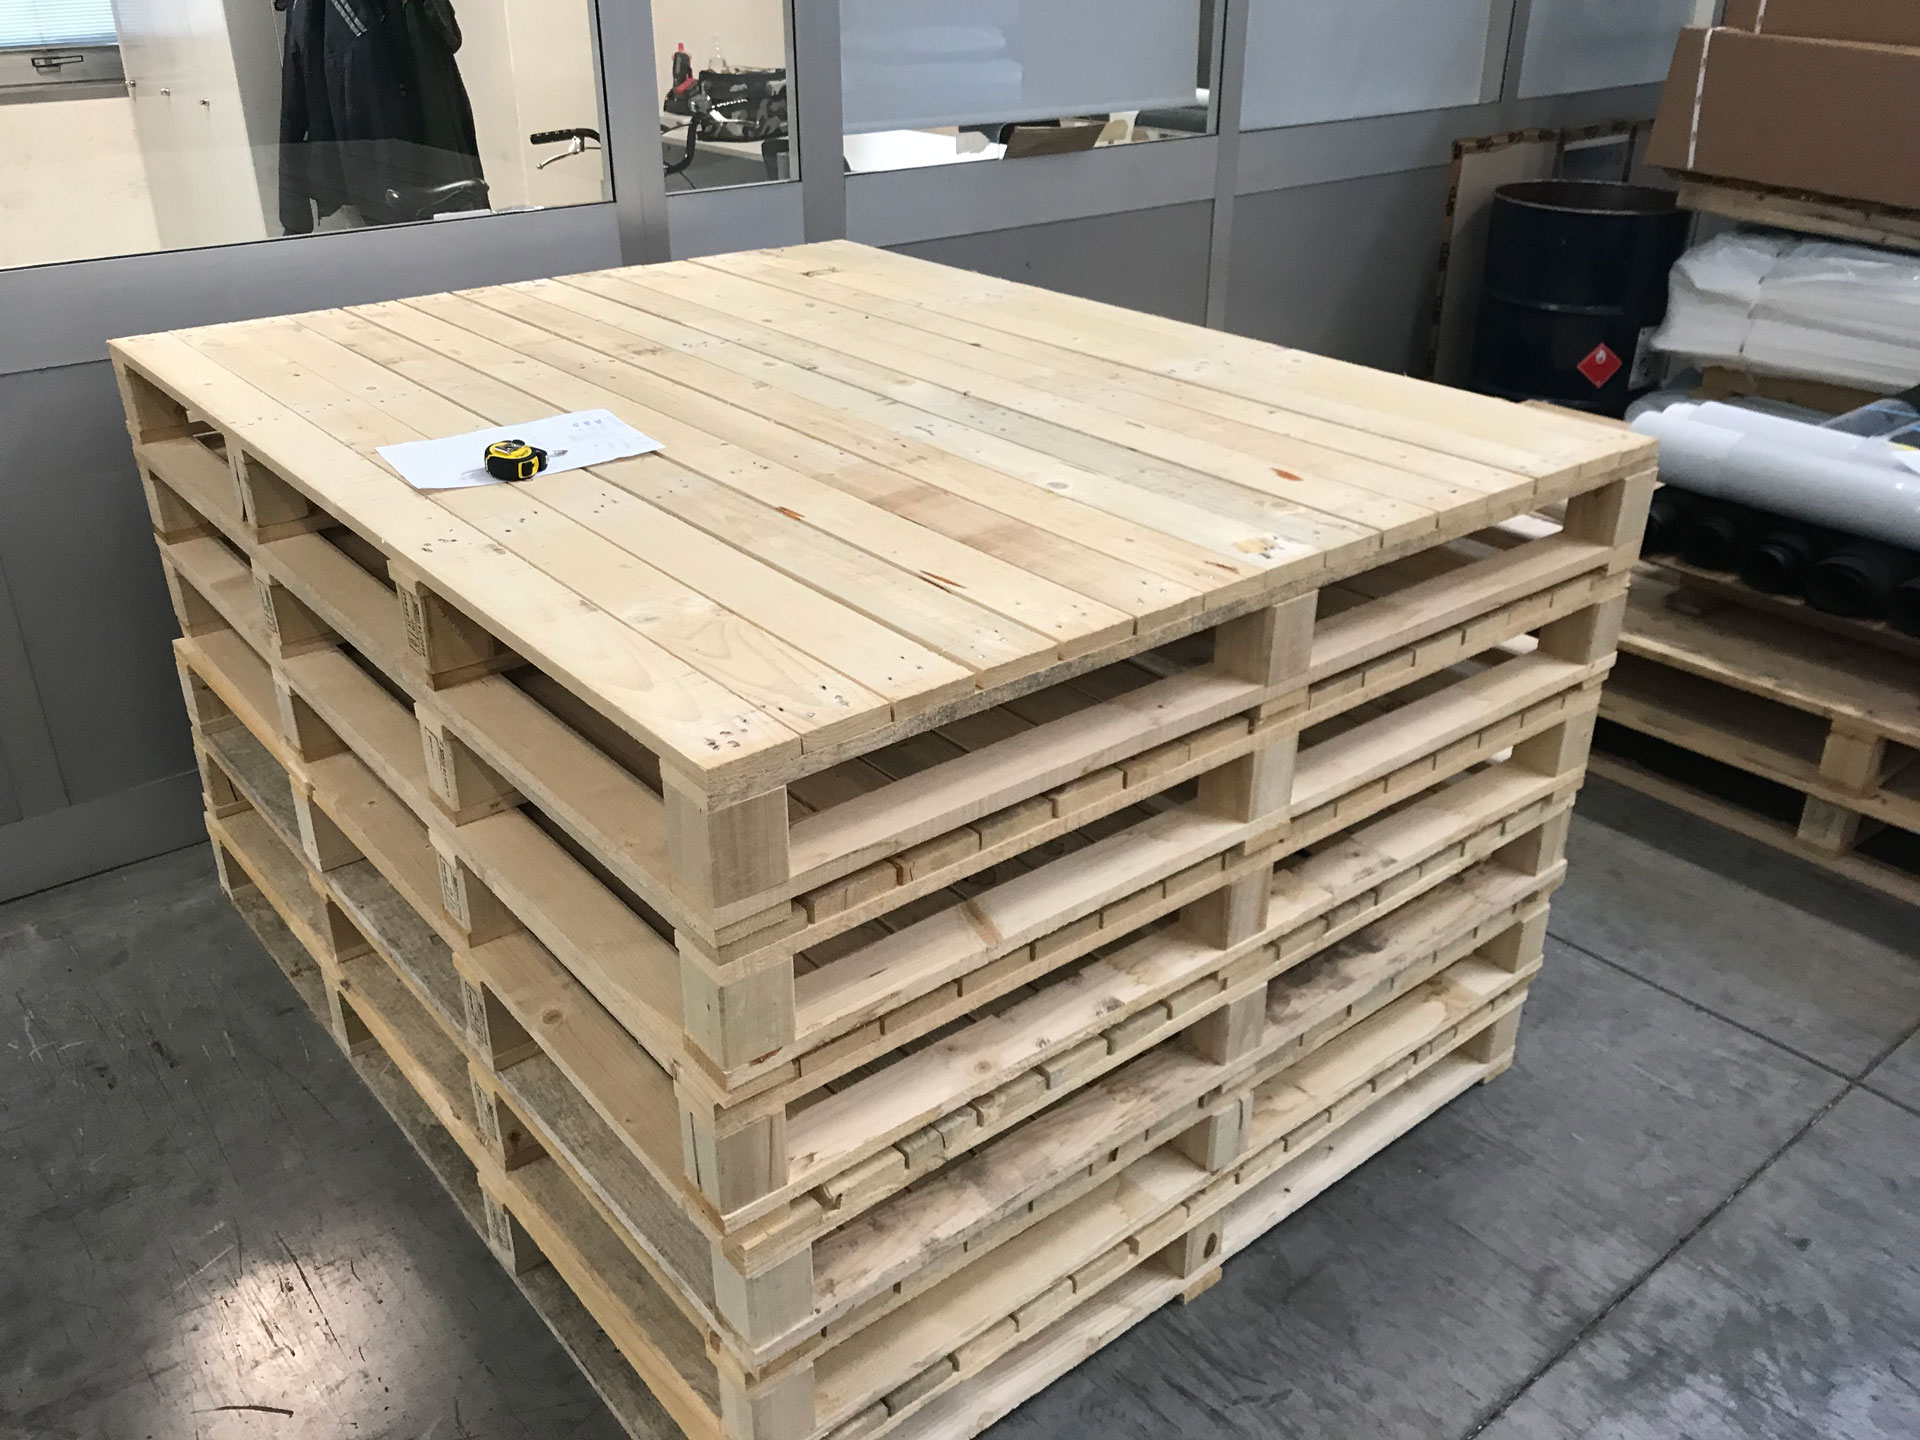 Pedane - Vipallets - Imballaggi industriali in legno